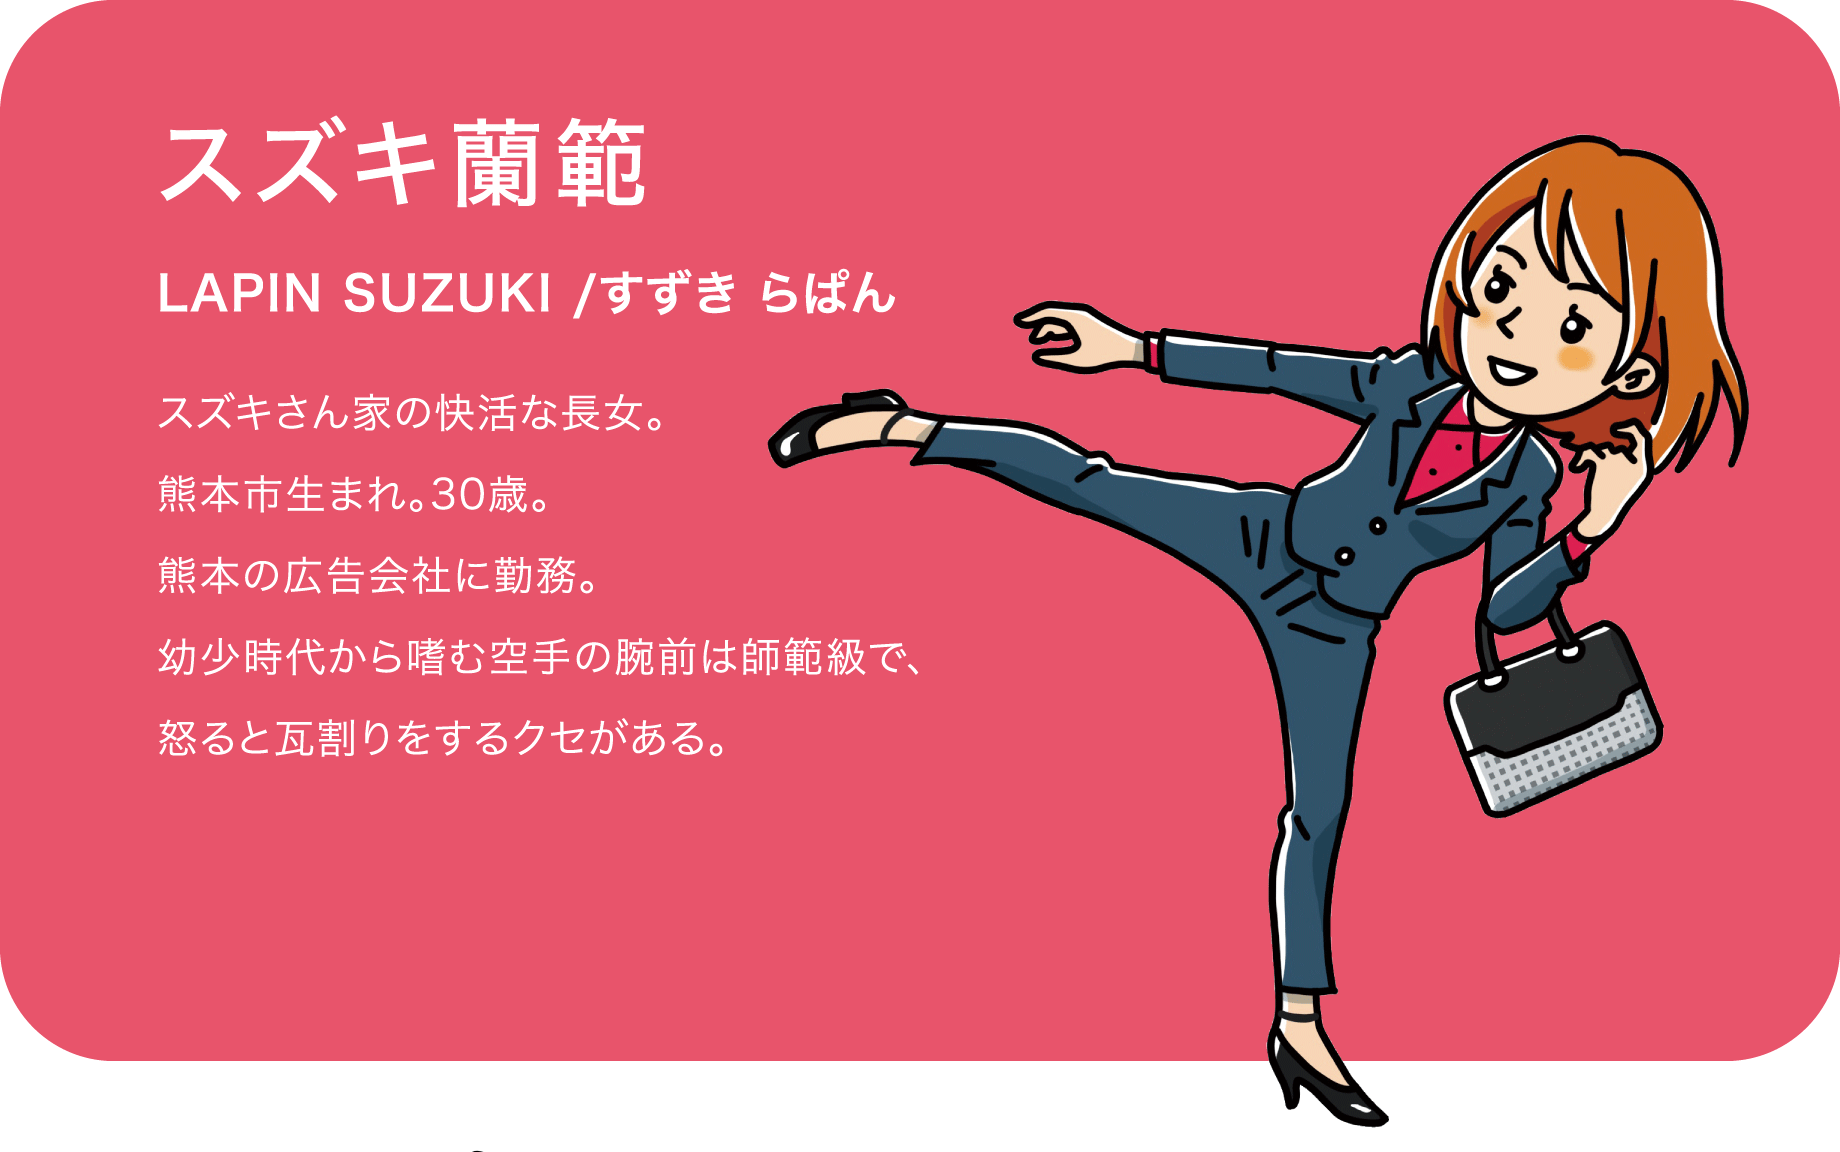 スズキ蘭範（LAPIN SUZUKI /すずき らぱん）スズキさん家の快活な長女。熊本市生まれ。30歳。熊本の広告会社に勤務。幼少時代から嗜む空手の腕前は師範級で、怒ると瓦割りをするクセがある。